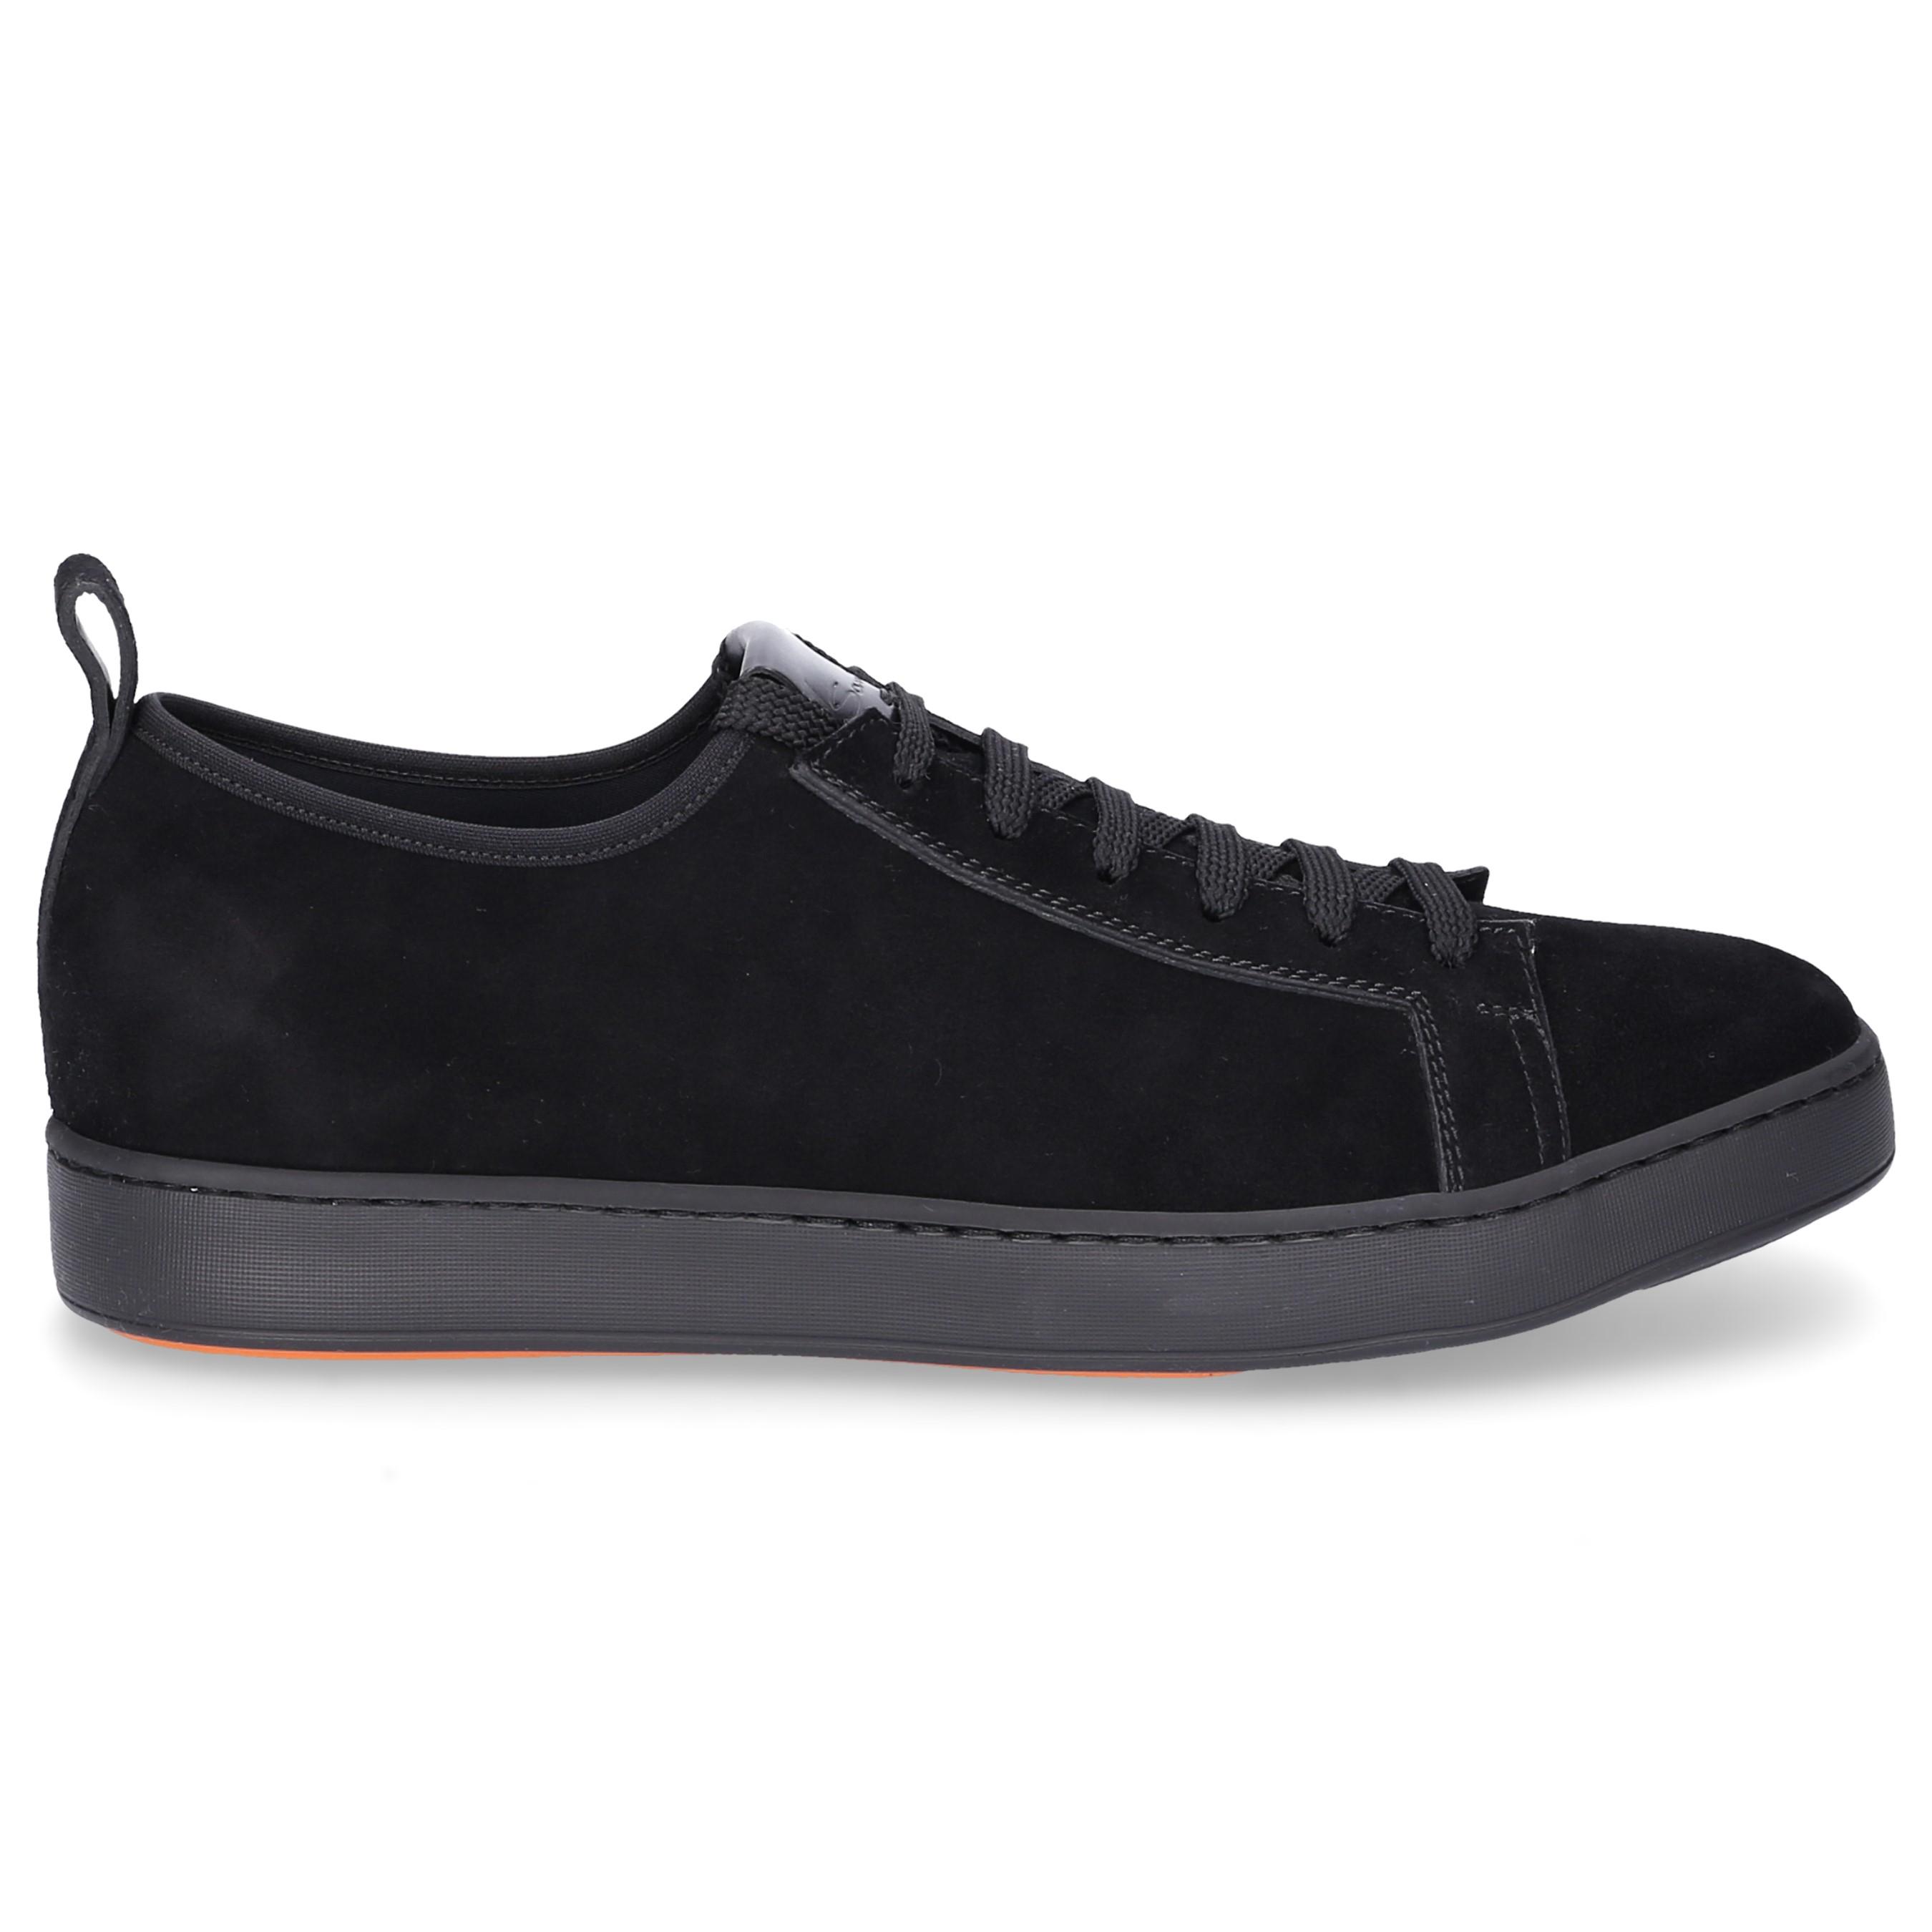 Santoni Low-top Sneakers 20826 Suede Black in Black for Men - Lyst